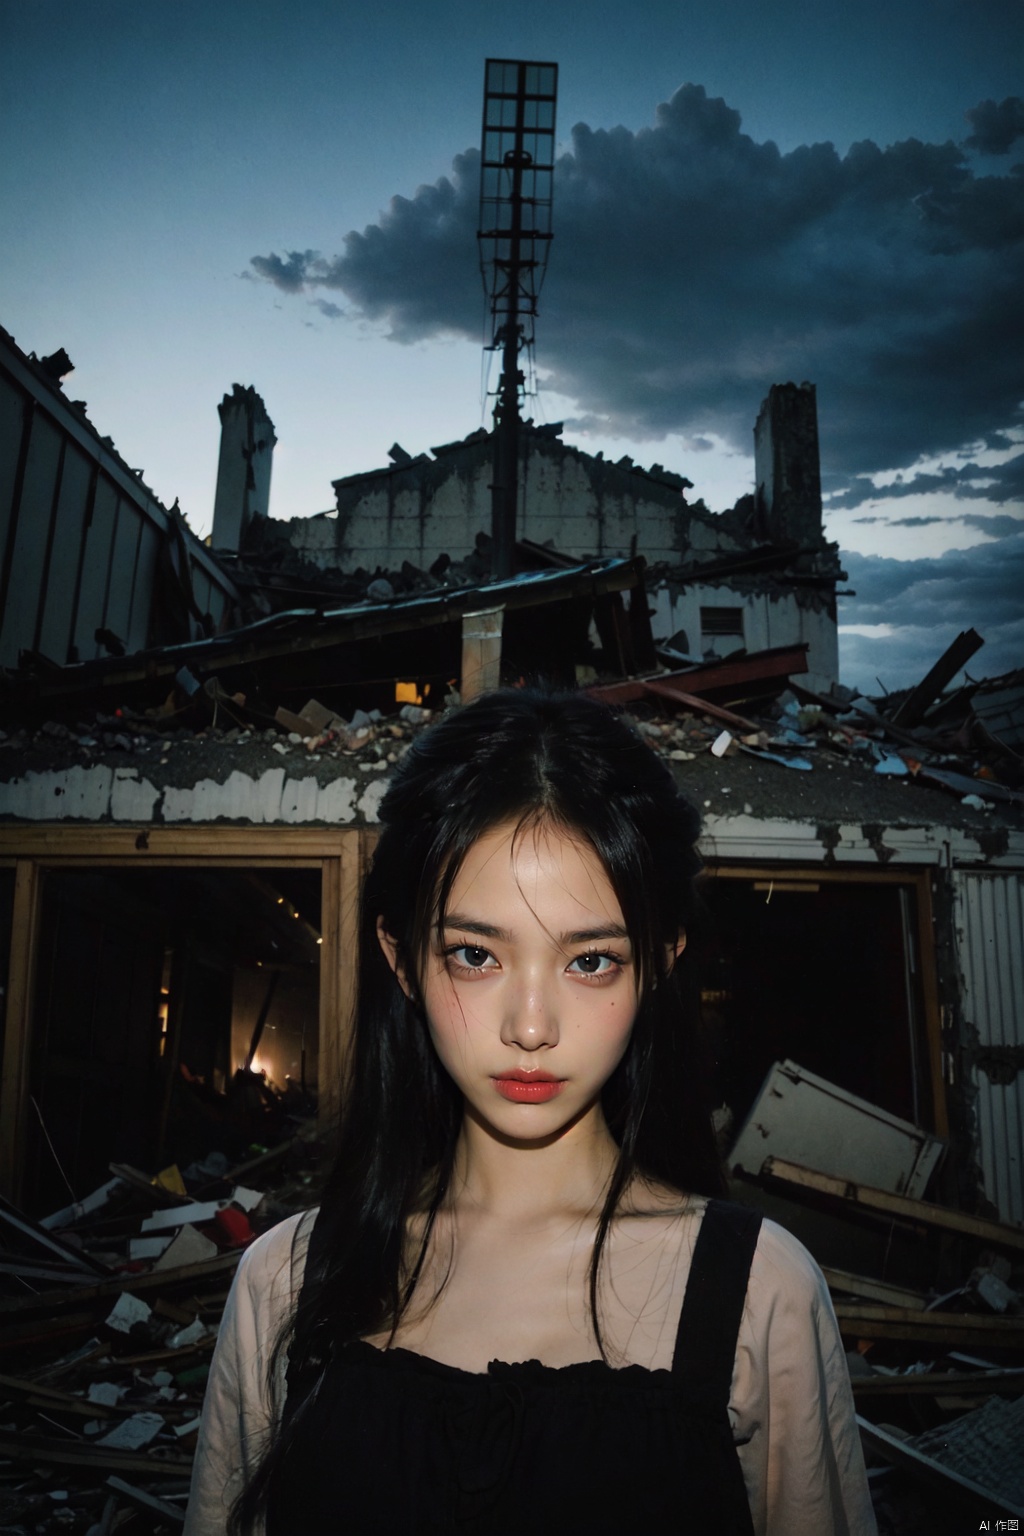  Gloomy image,1 girl robot,Metal body,Gloomy atmosphere,Red luminous eyes,Destroyed building,Gloomy sky,cruelty, Detail